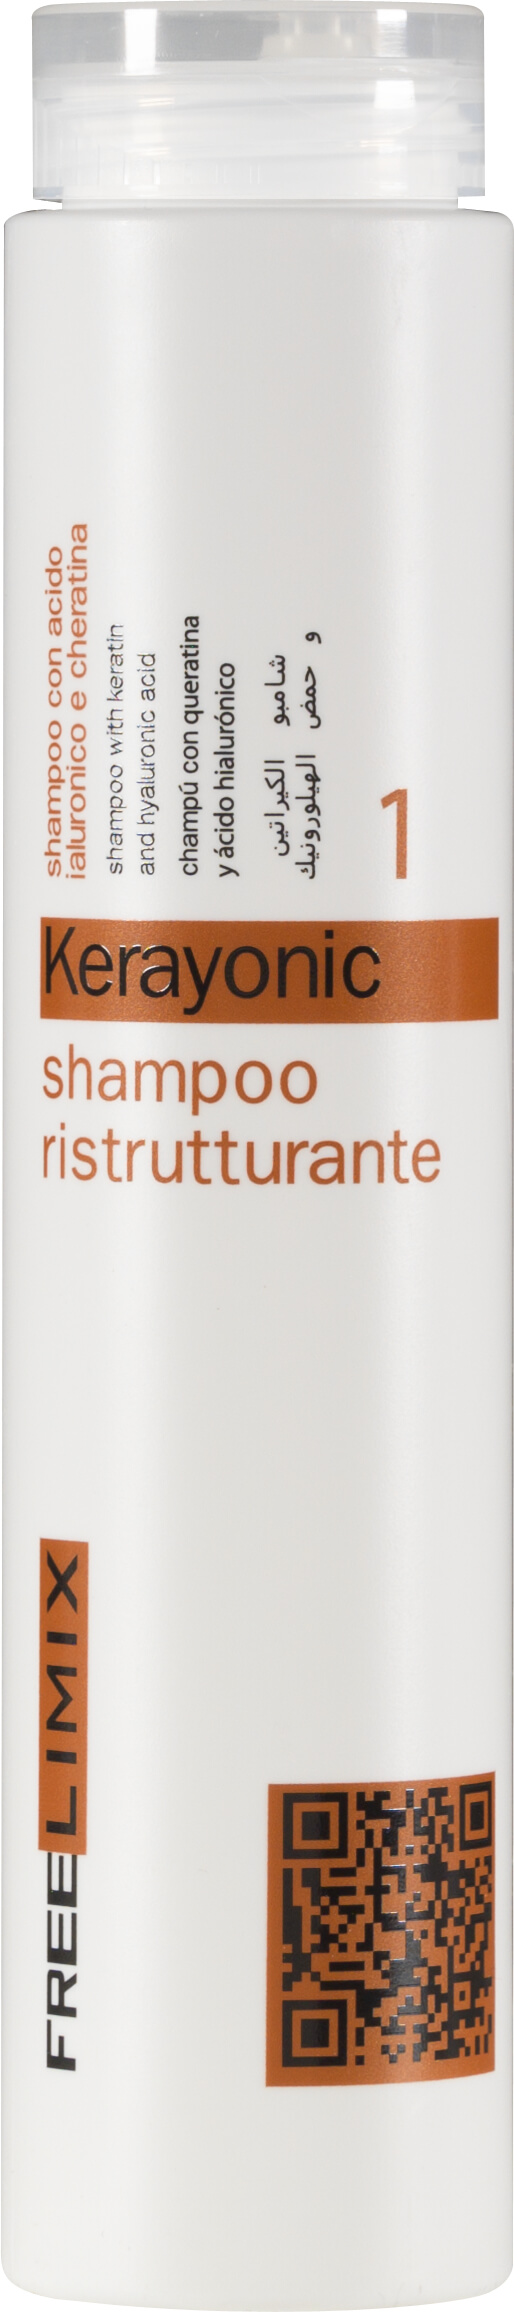 Freelimix Rekonstrukční šampon na vlasy Kerayonic (Shampoo) 250 ml